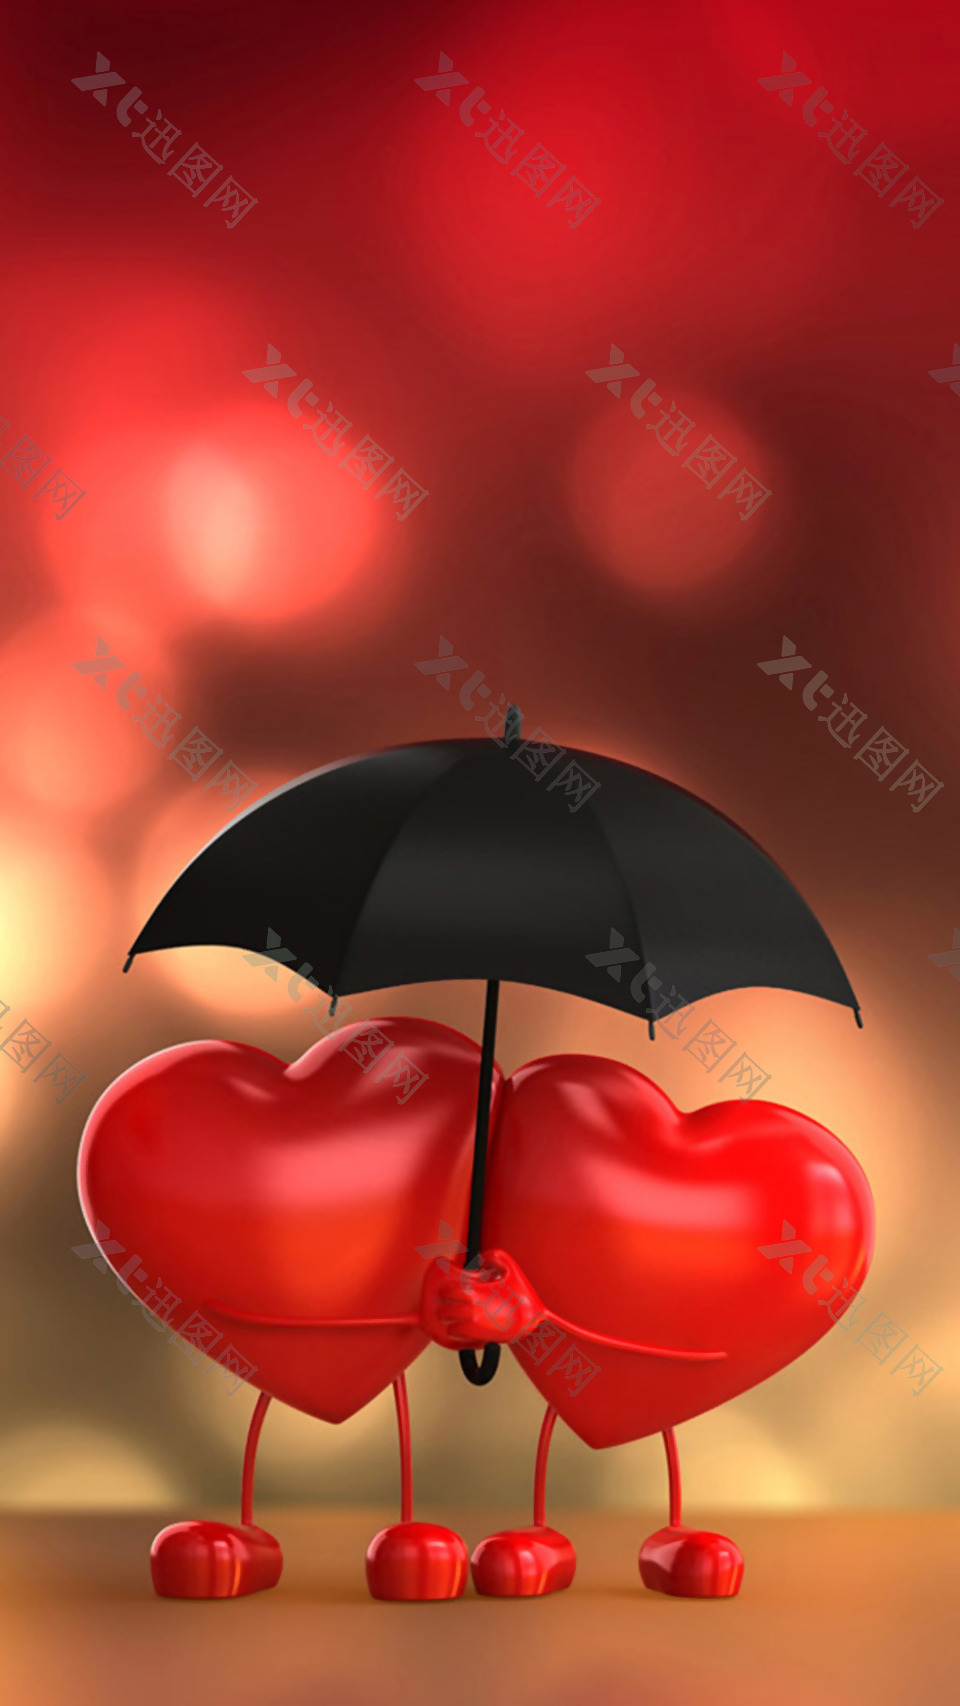 简约红色心形雨伞H5背景素材